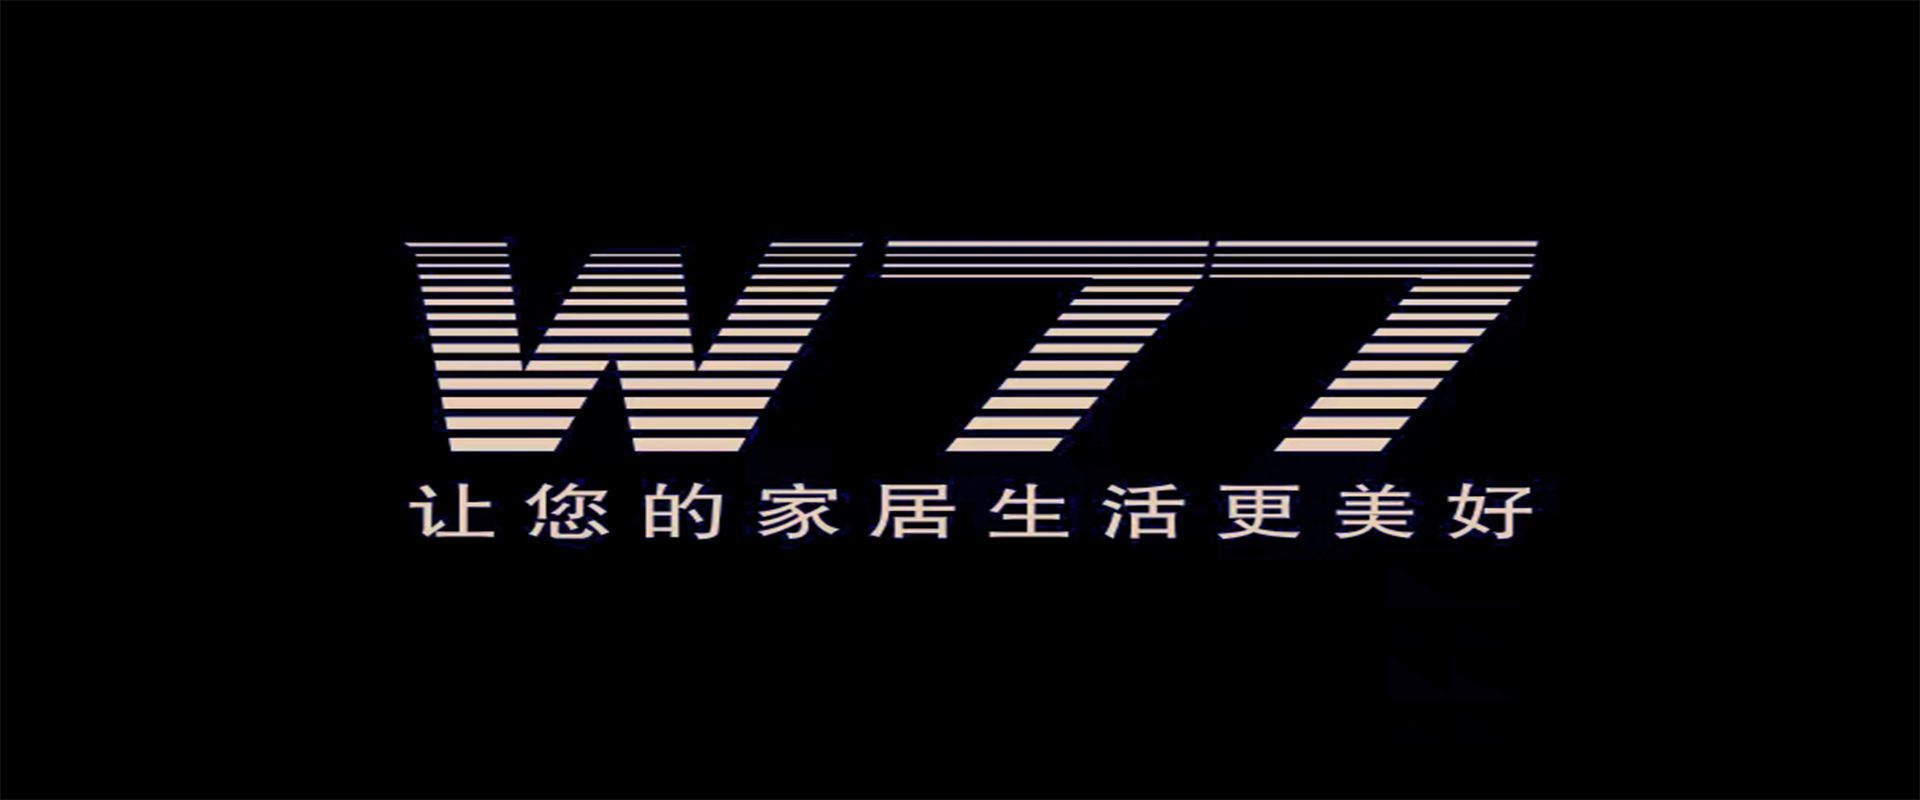 W77系列